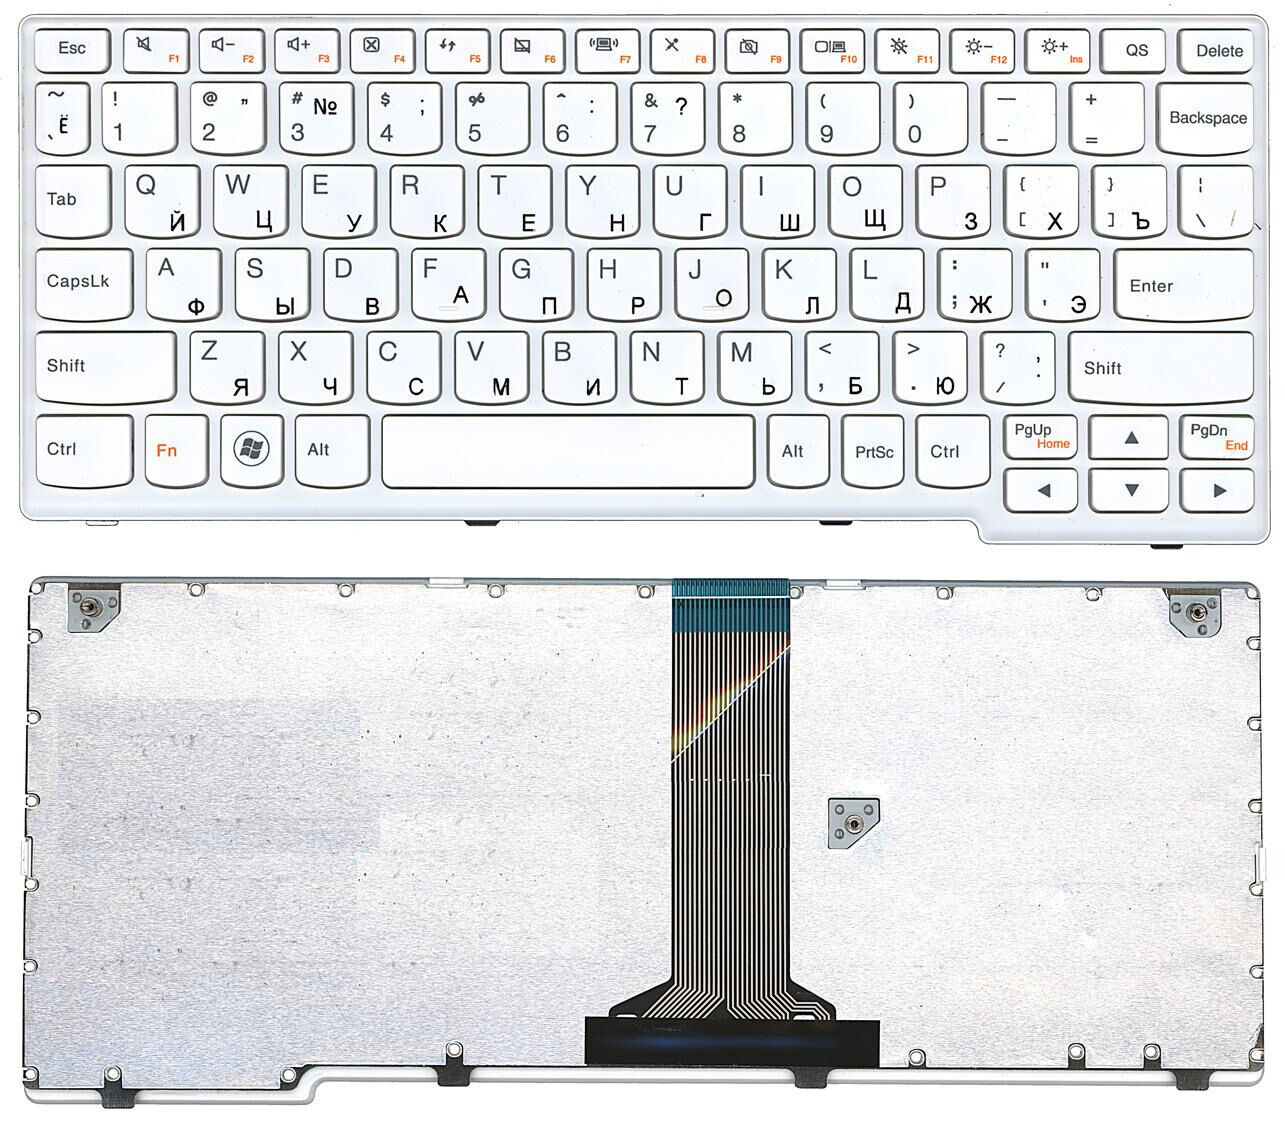 Клавиатура для ноутбука Lenovo S205 U160 U165 S205 белая p/n: 25-010581 Г-образный enter